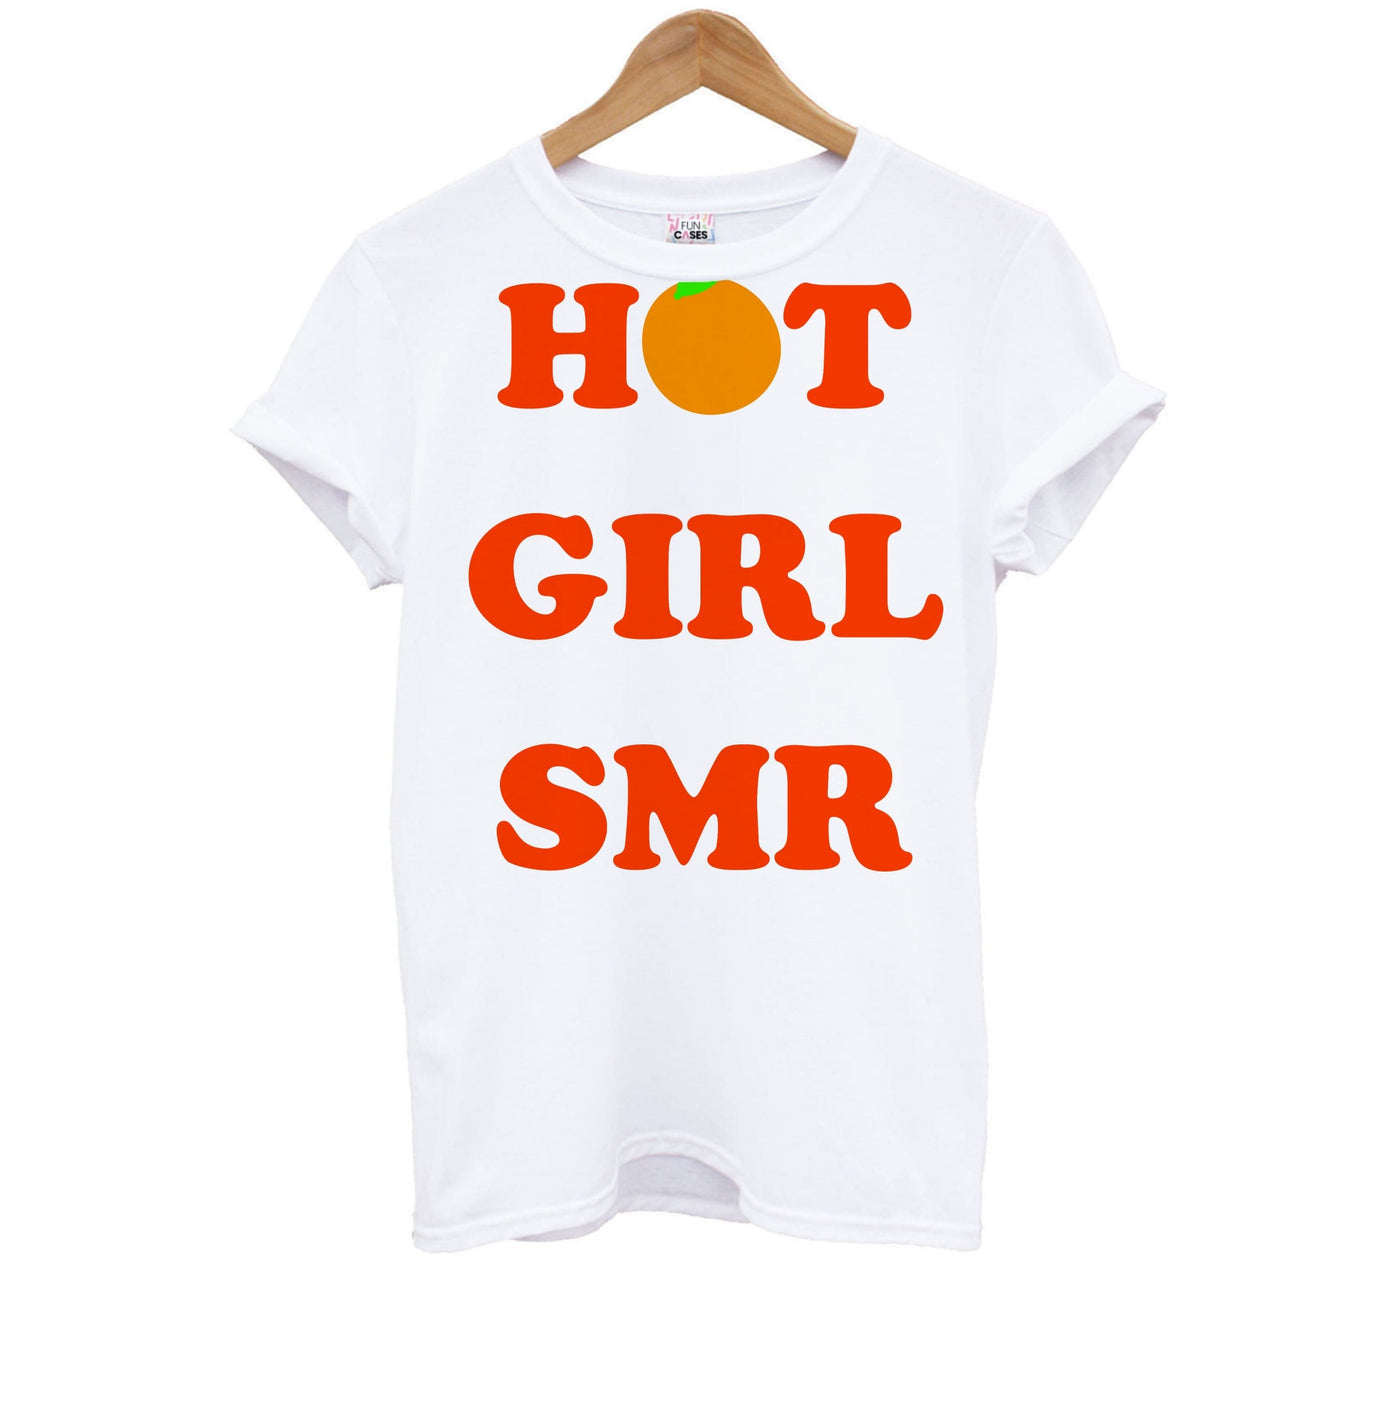 Hot Girl SMR - Summer Kids T-Shirt